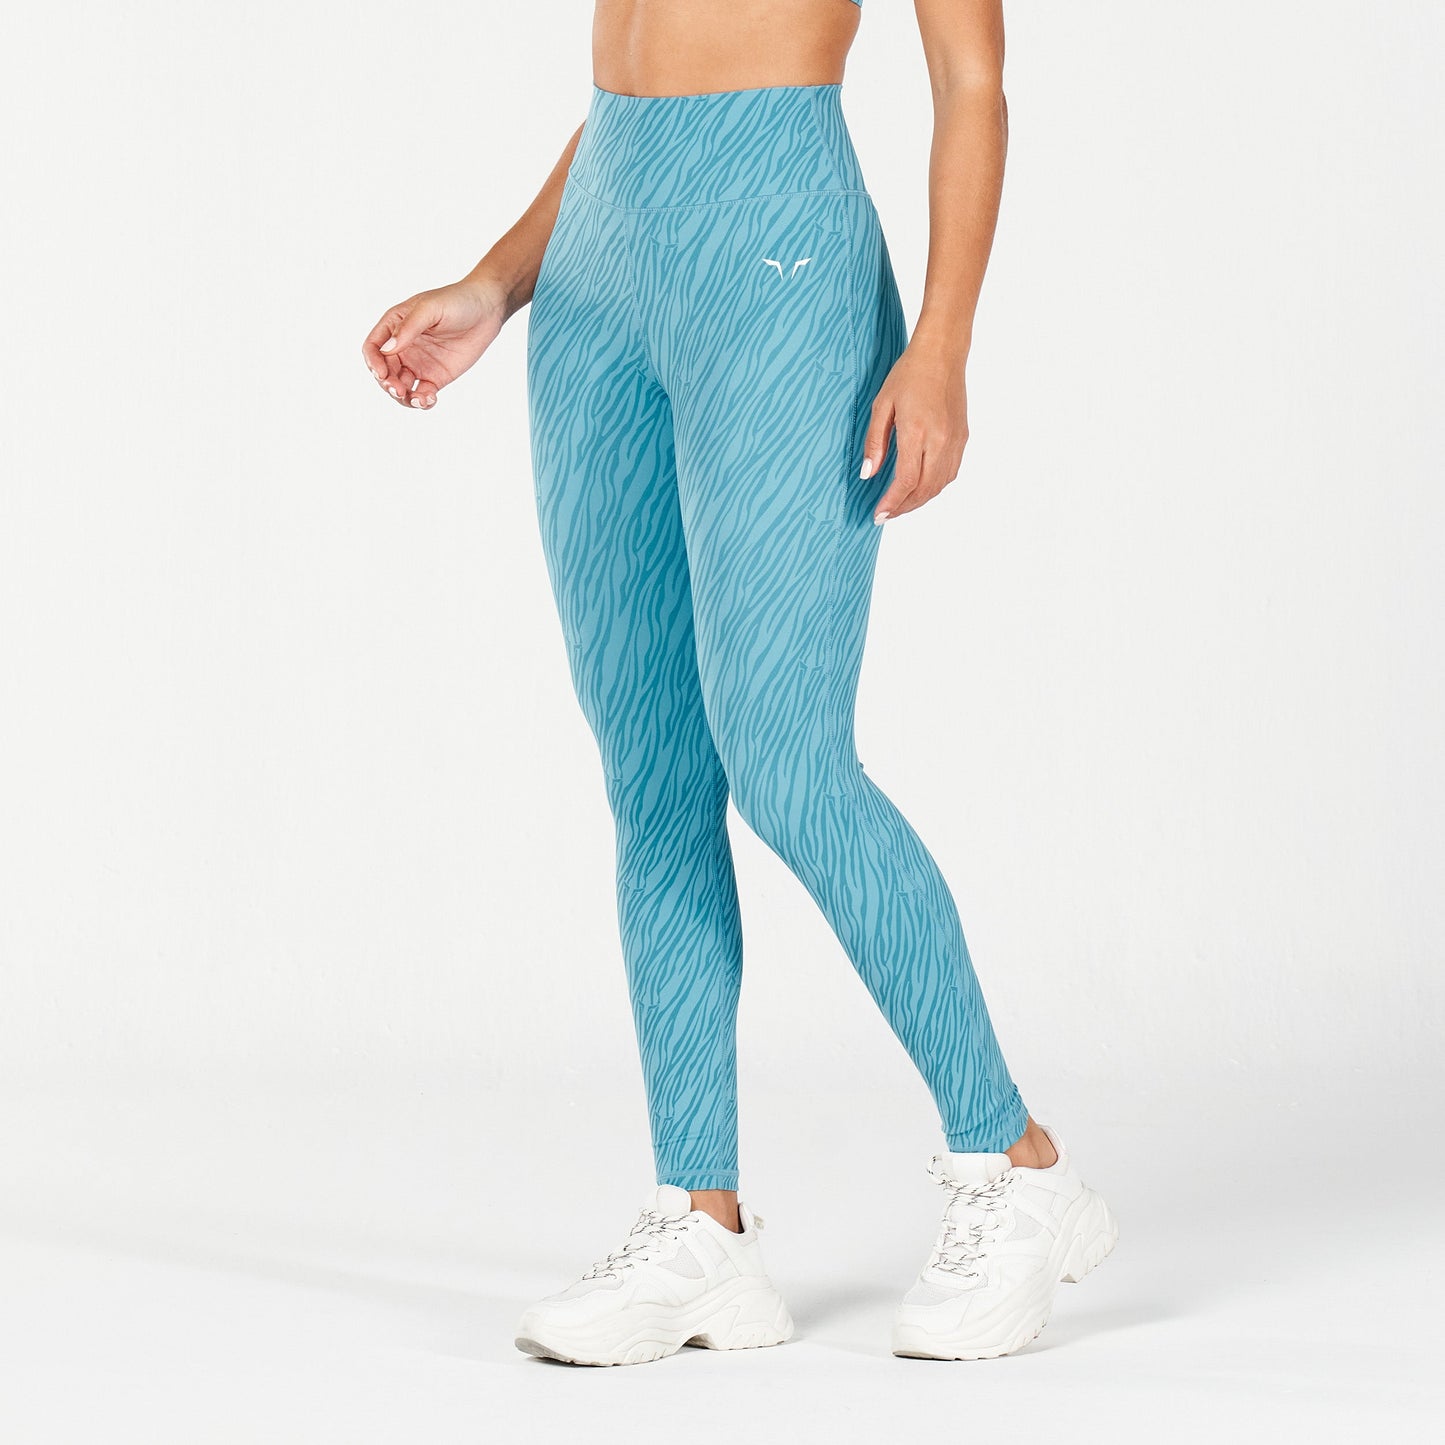 squatwolf-workout-clothes-core-wild-print-leggings-delph-blue-gym-leggings-for-women